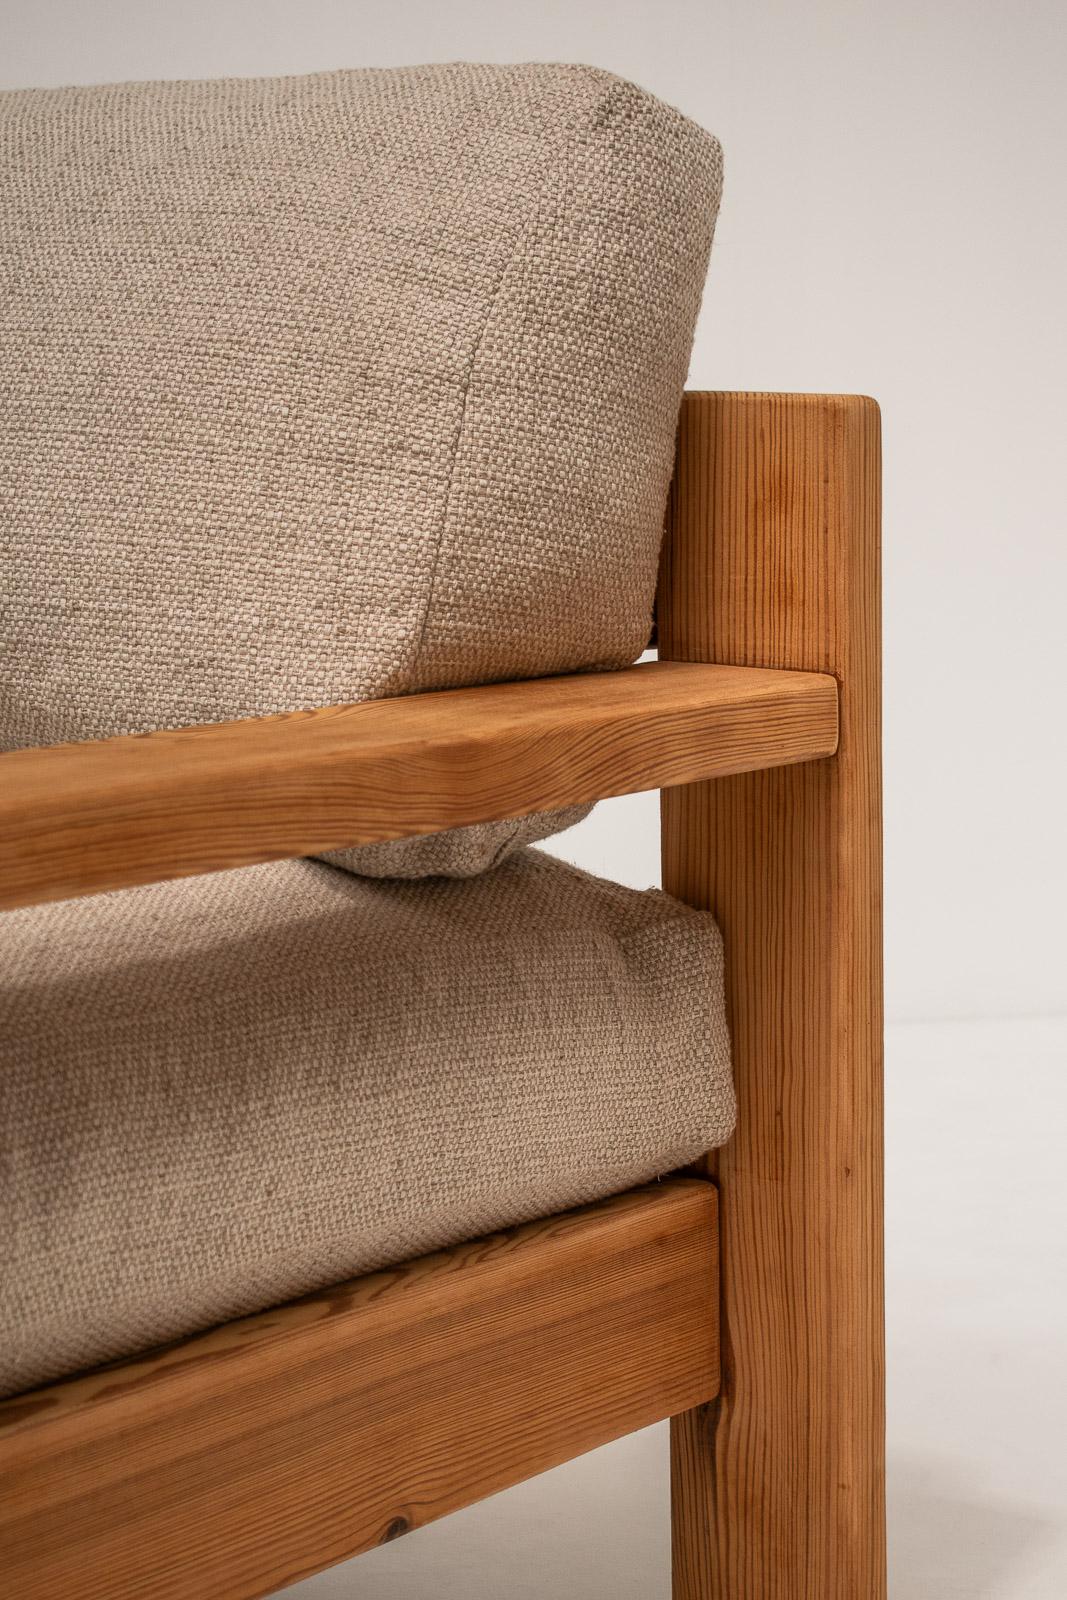 Minimalistische Sessel aus der Mitte des Jahrhunderts, entworfen in den 1970er Jahren, hergestellt in Italien. 

Diese Loungesessel wurden so entworfen, dass sie eine beruhigende und einladende Ausstrahlung haben, der perfekte Gegenstand, um sich